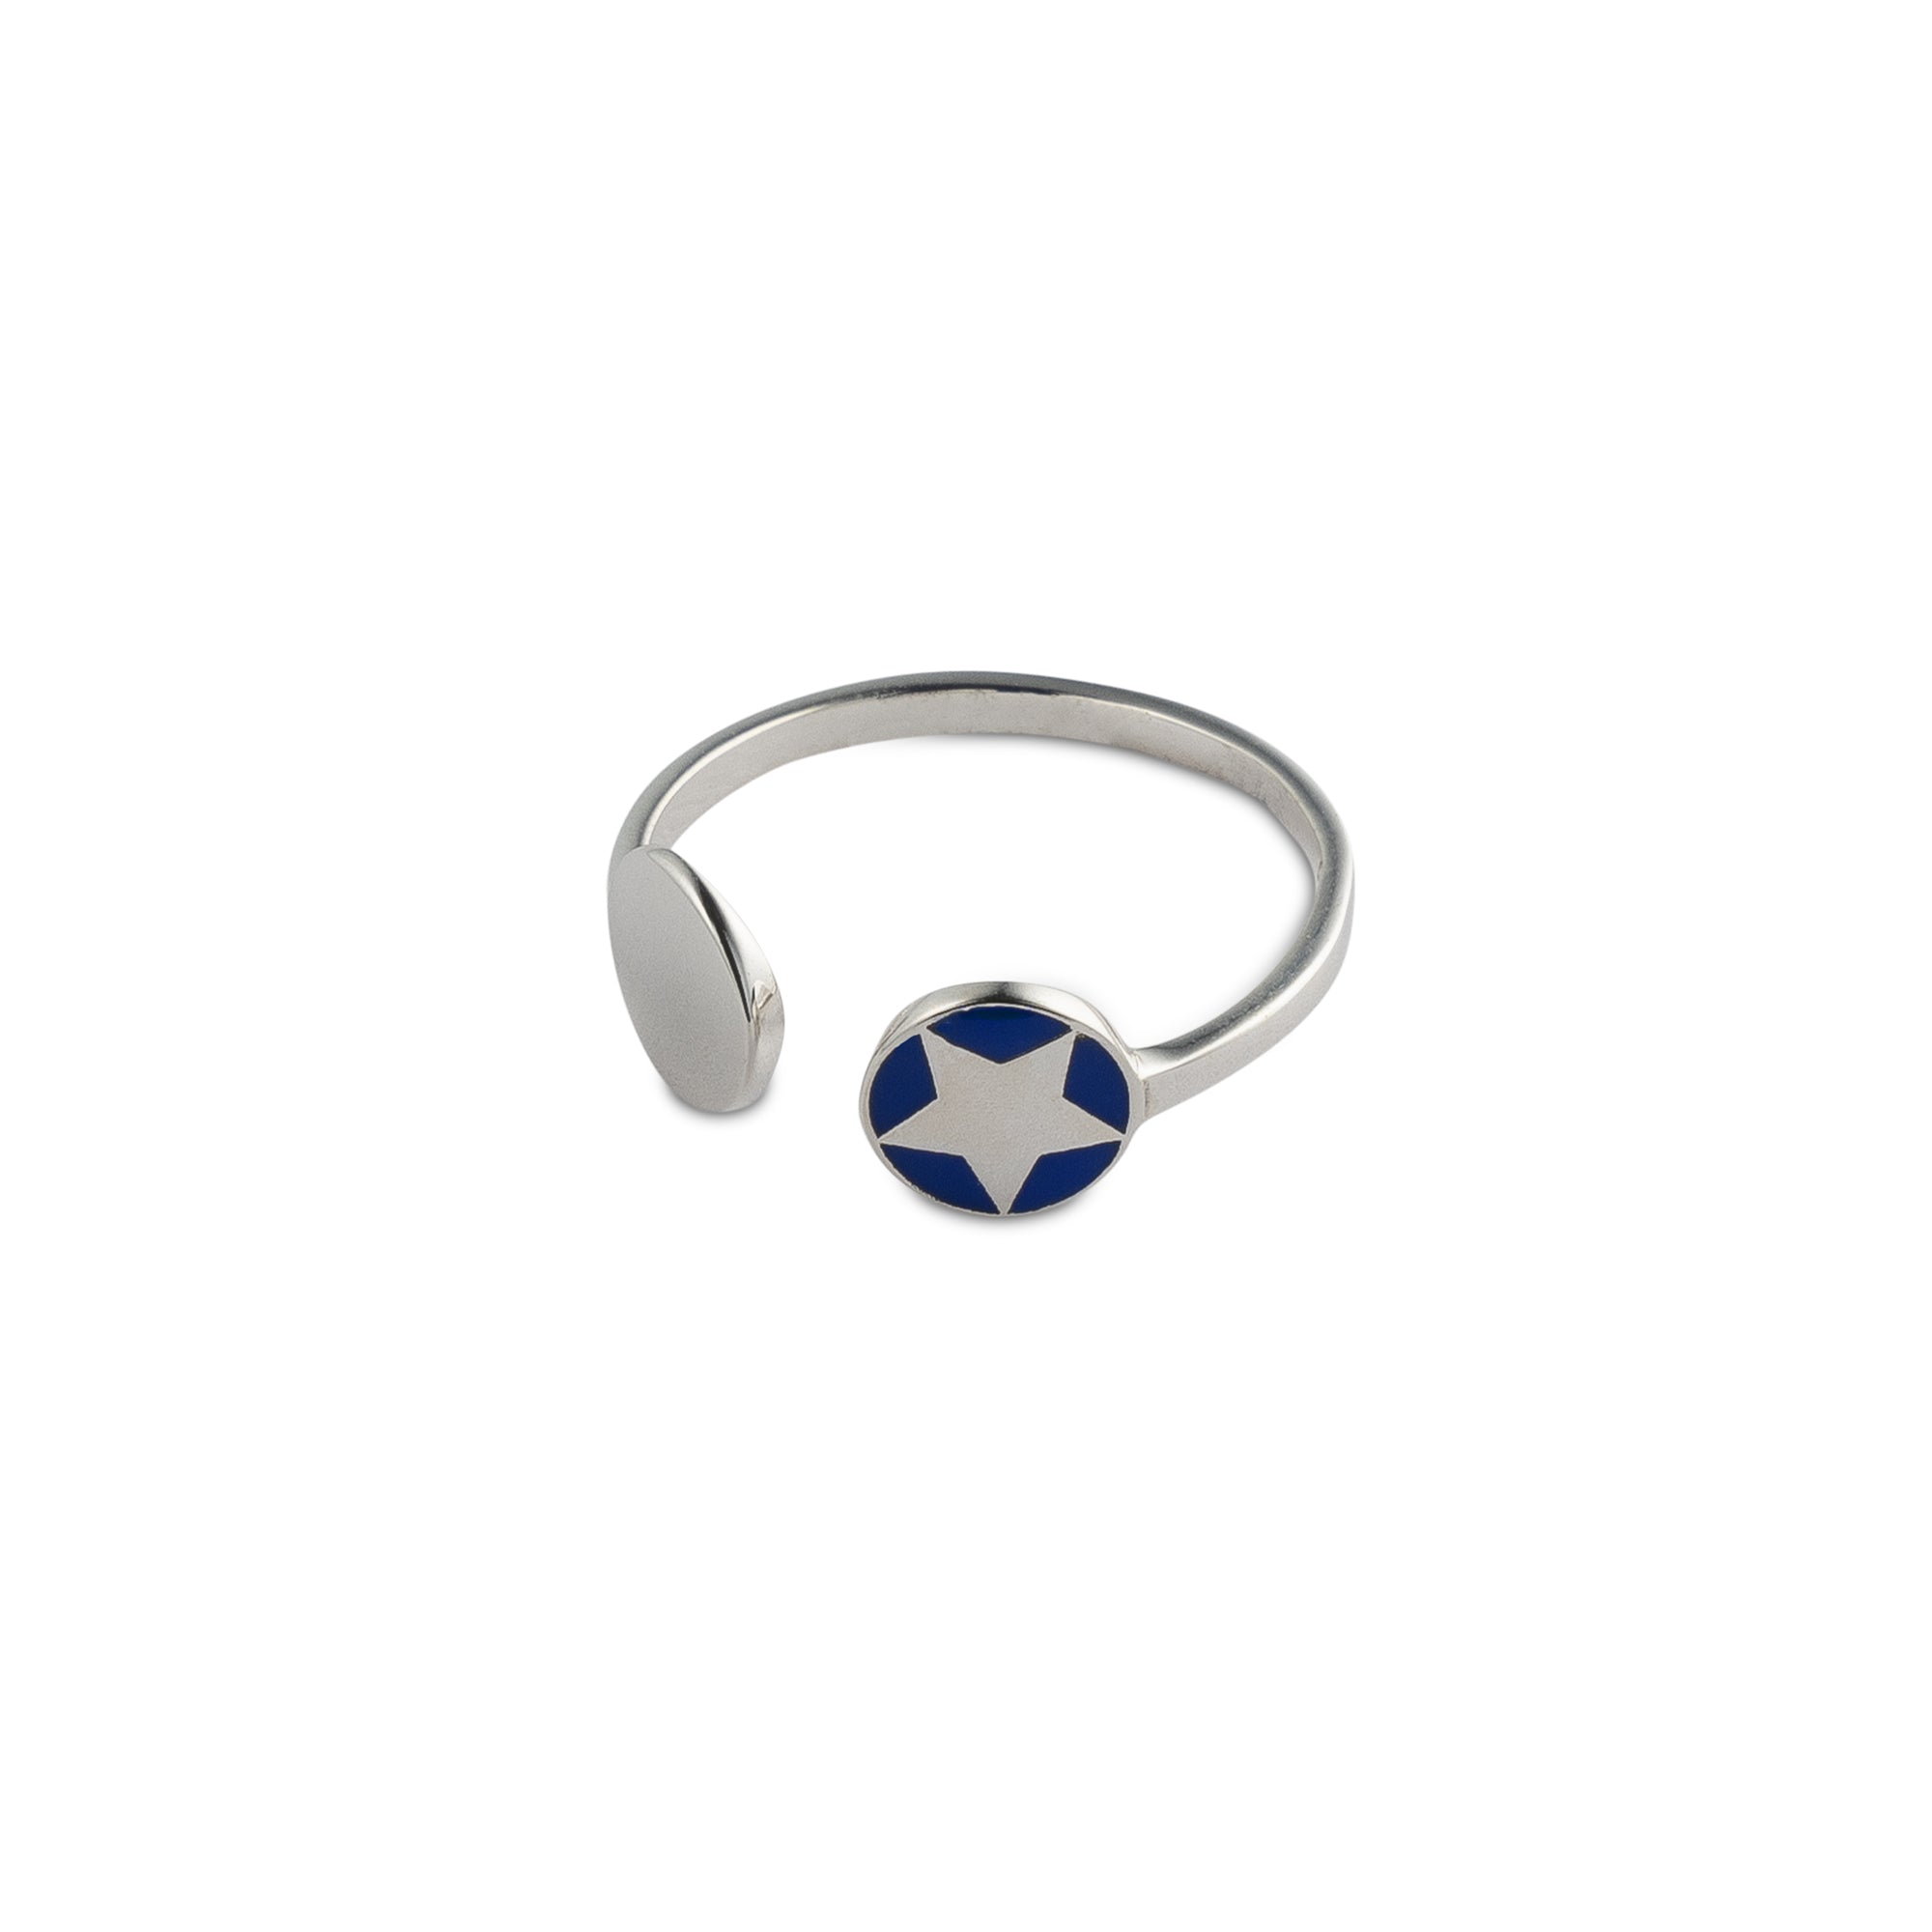 *New Enamel Blue Star Adjustable Ring